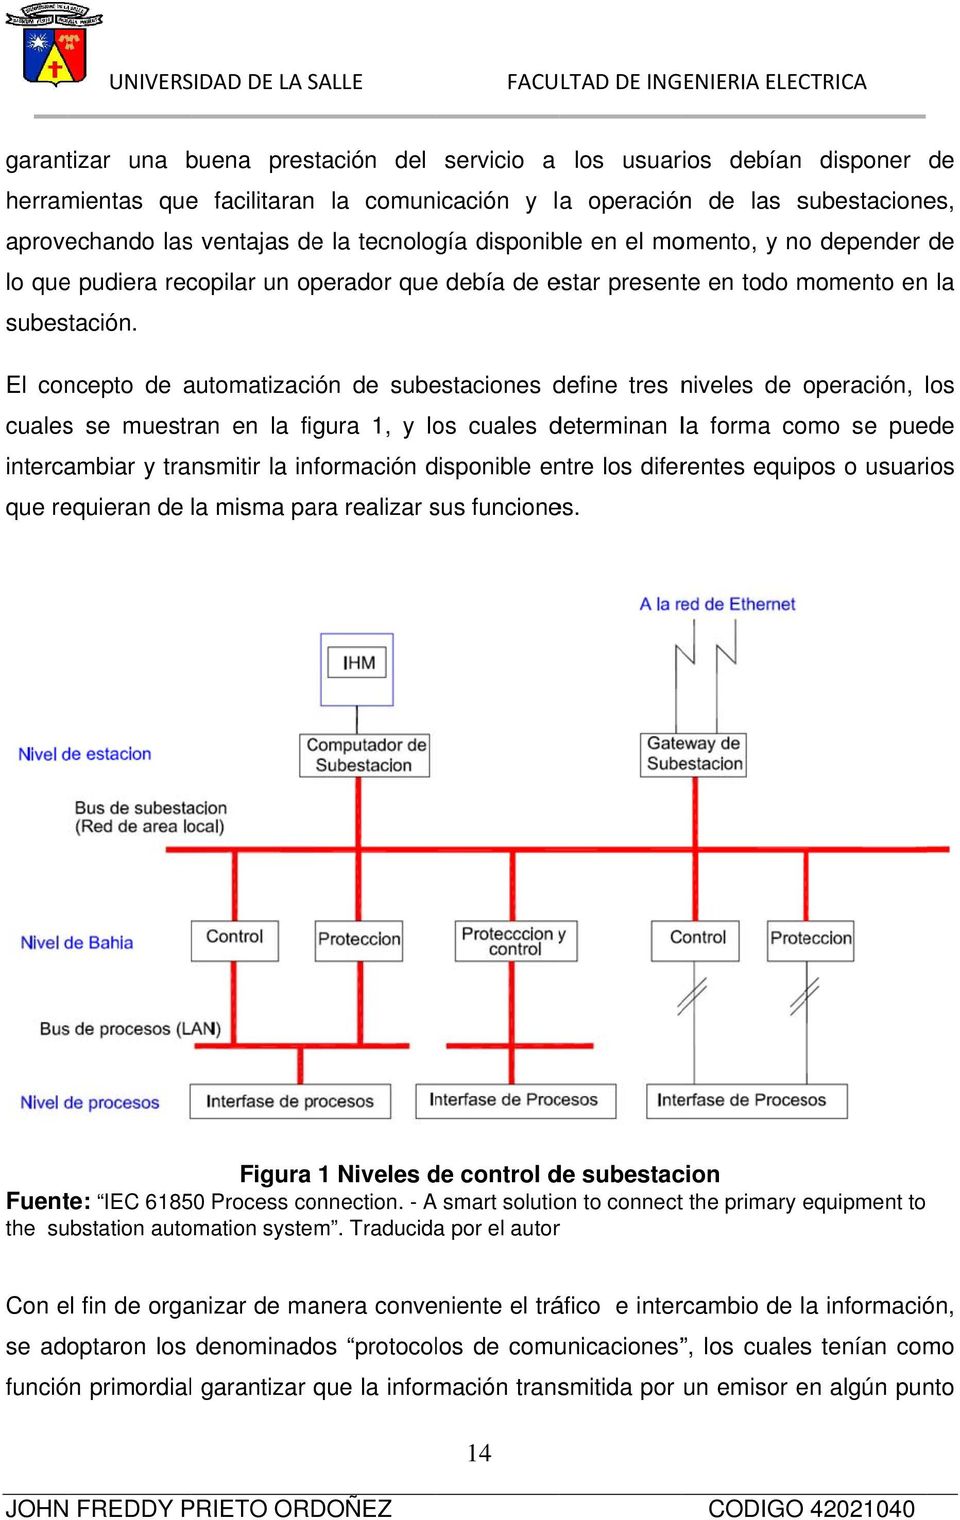 El concepto de automatizaci ón de subestaciones define tres niveles de operación, los cuales se muestran en la figura 1, y los cuales determinan la forma como se puede intercambiar y transmitir la